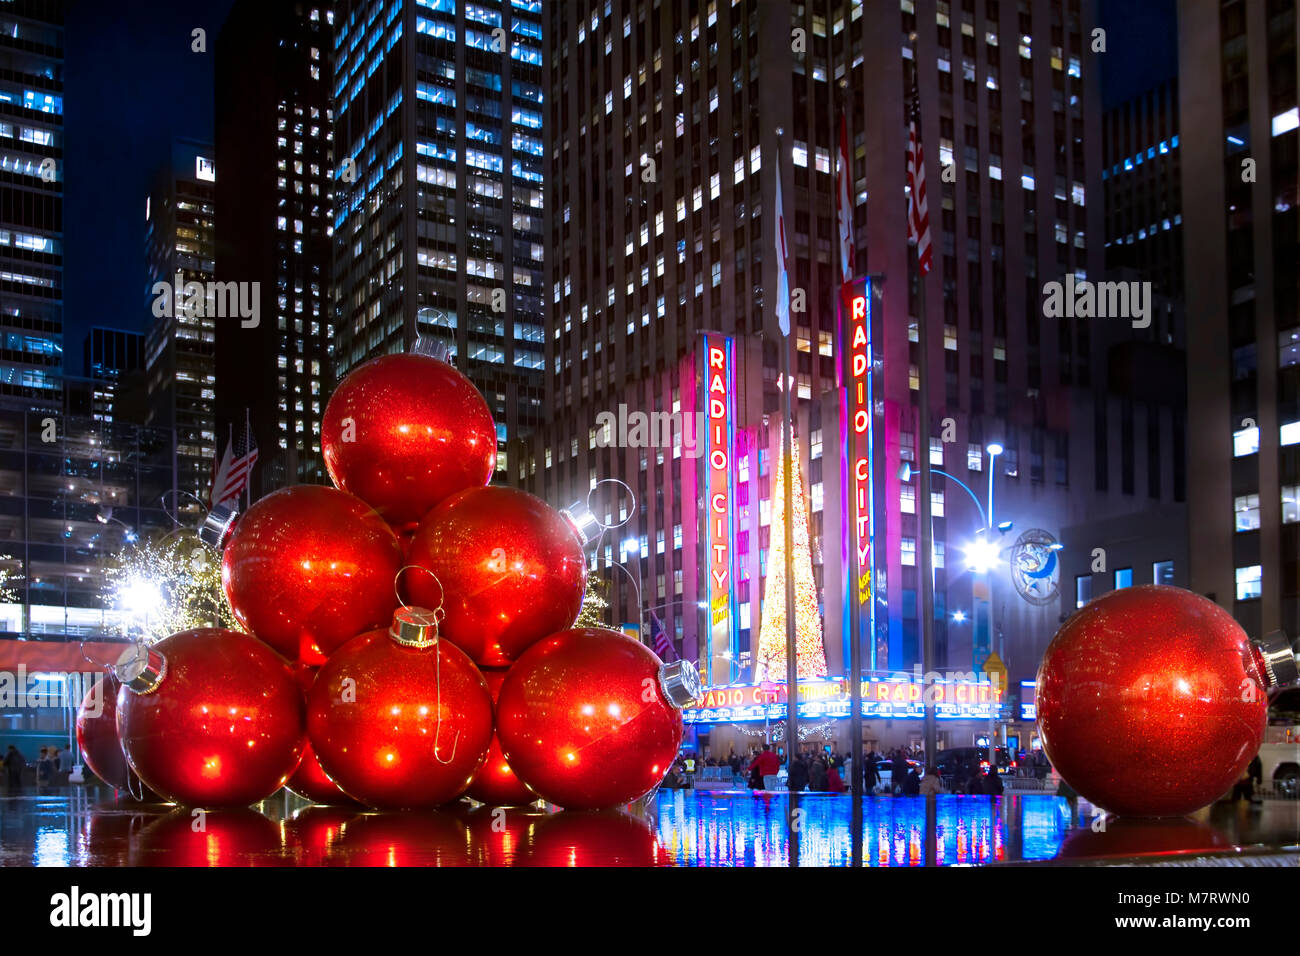 La belle maison de vacances affiche à Rockefeller Center en Décembre. Noël à New York est une expérience magique. Banque D'Images